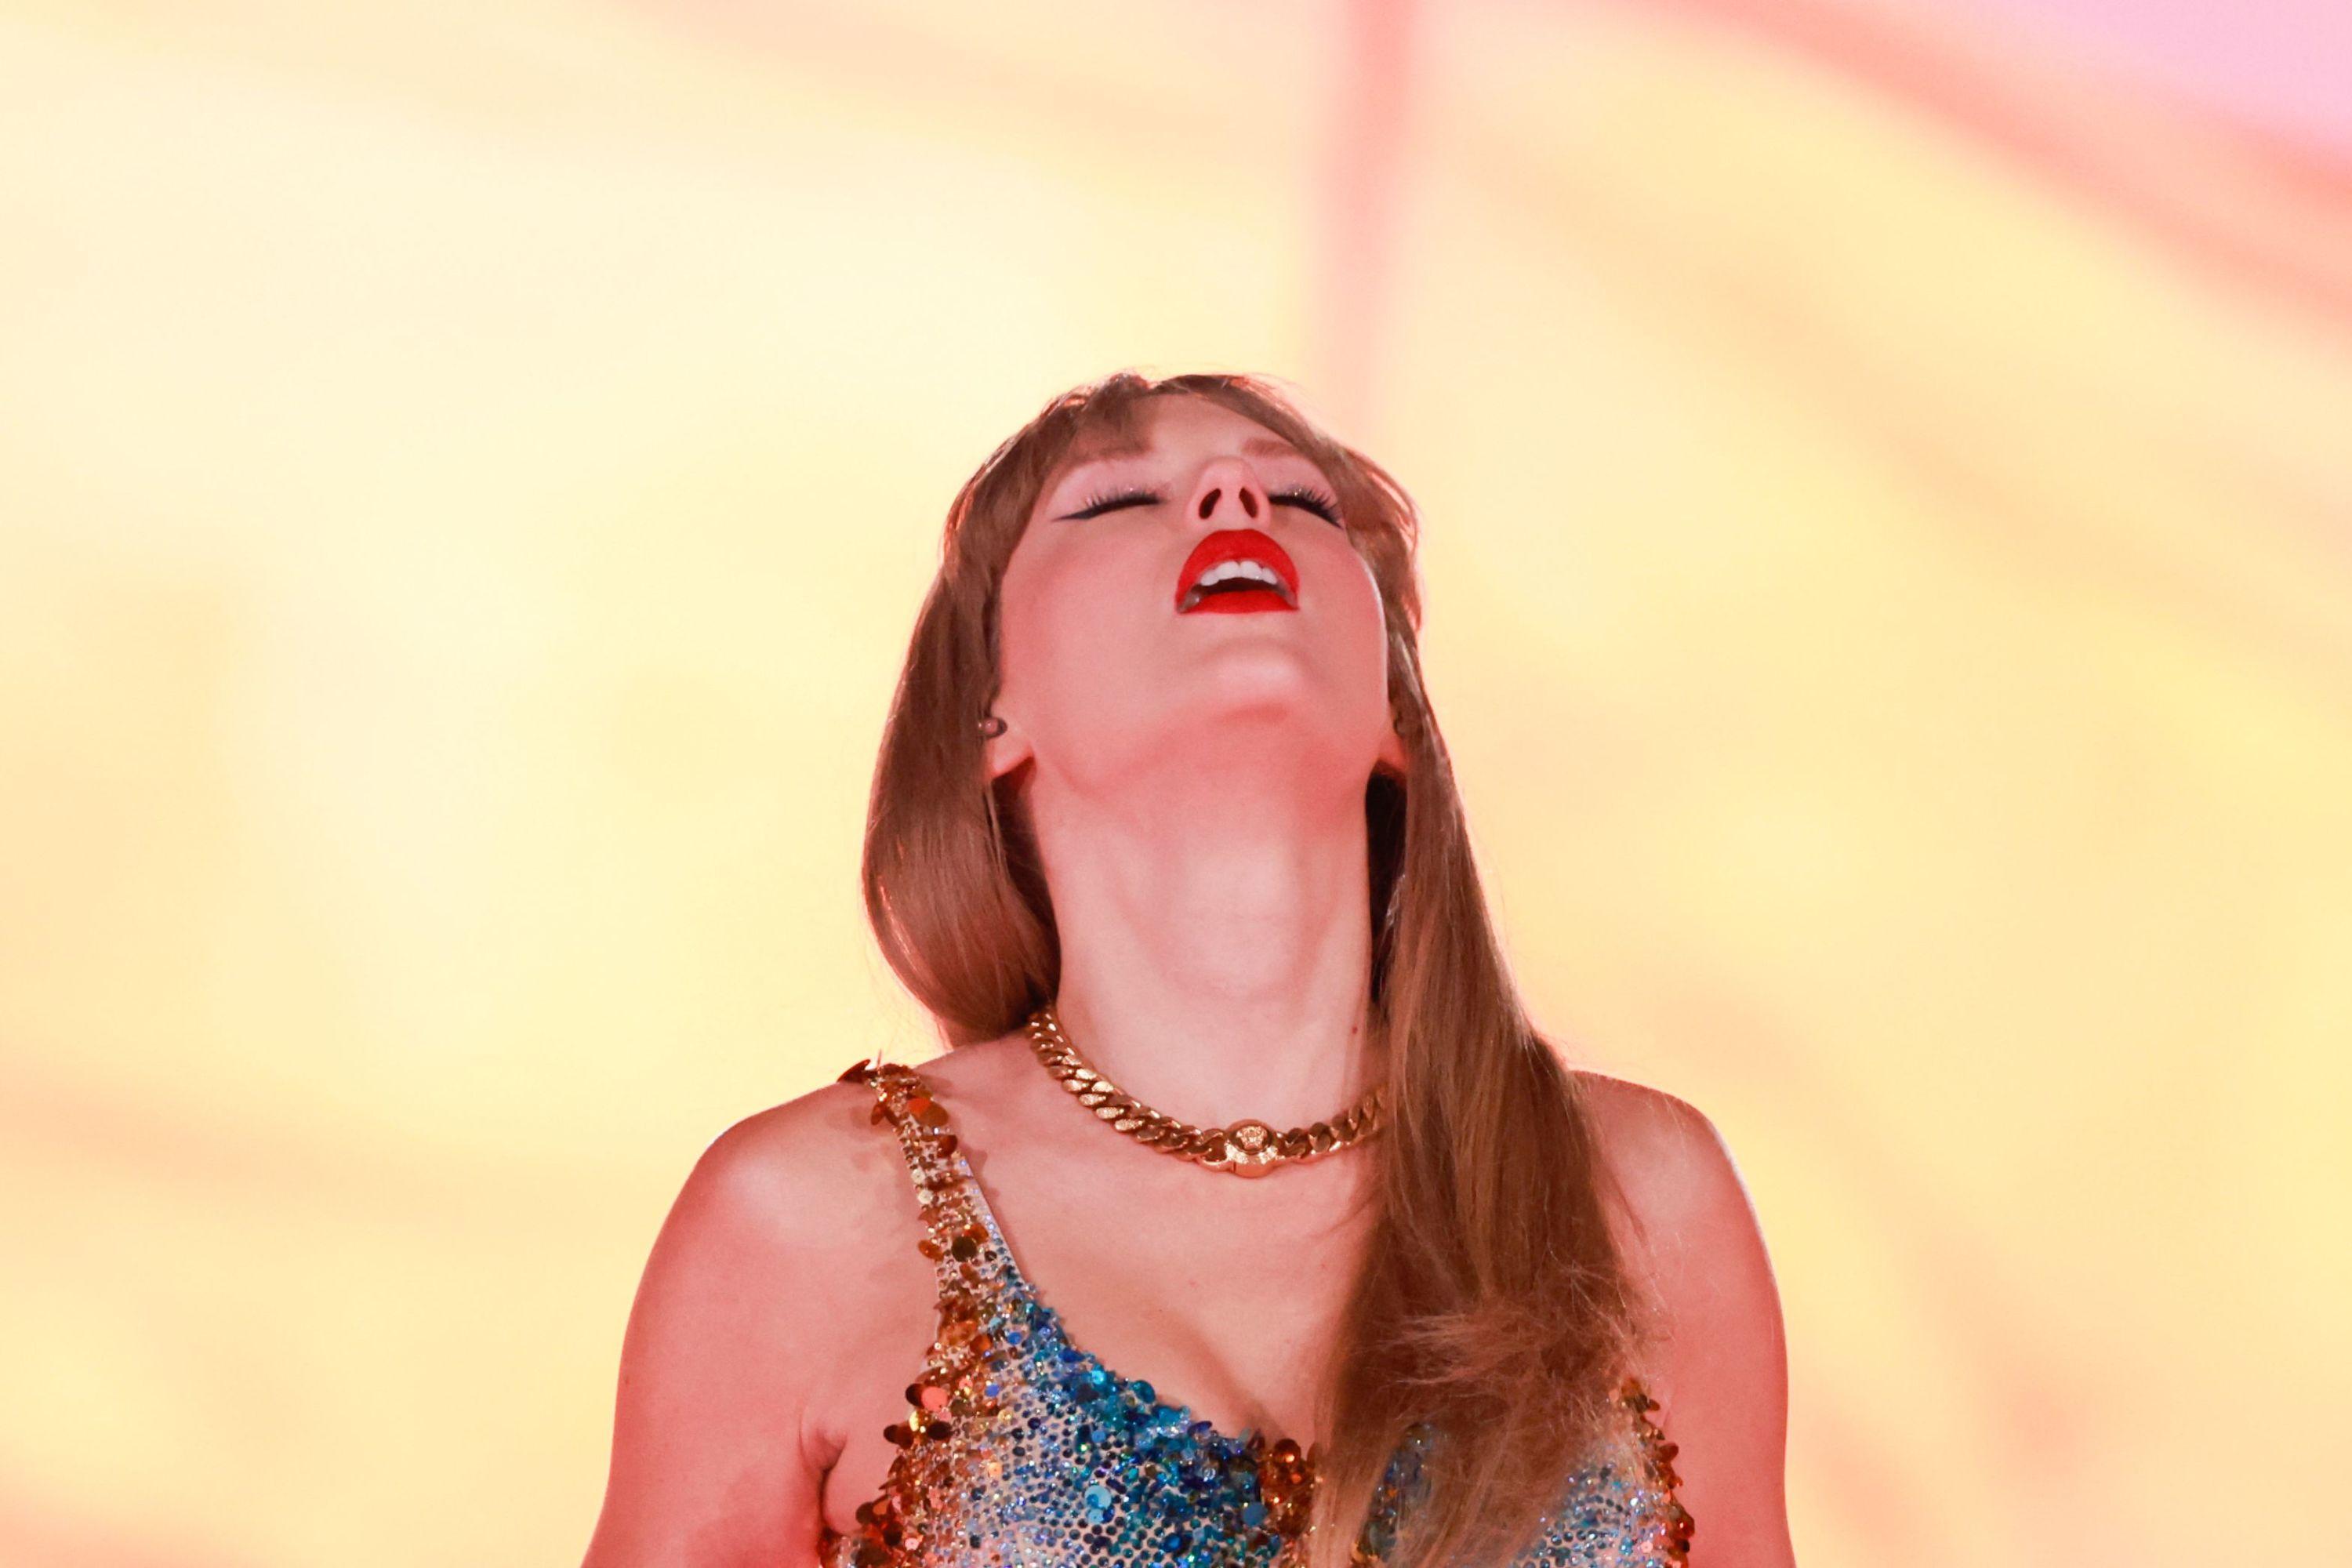 Lire article «Taylor Swift et son monde» : Harvard propose un cours de littérature sur l’œuvre de la chanteuse